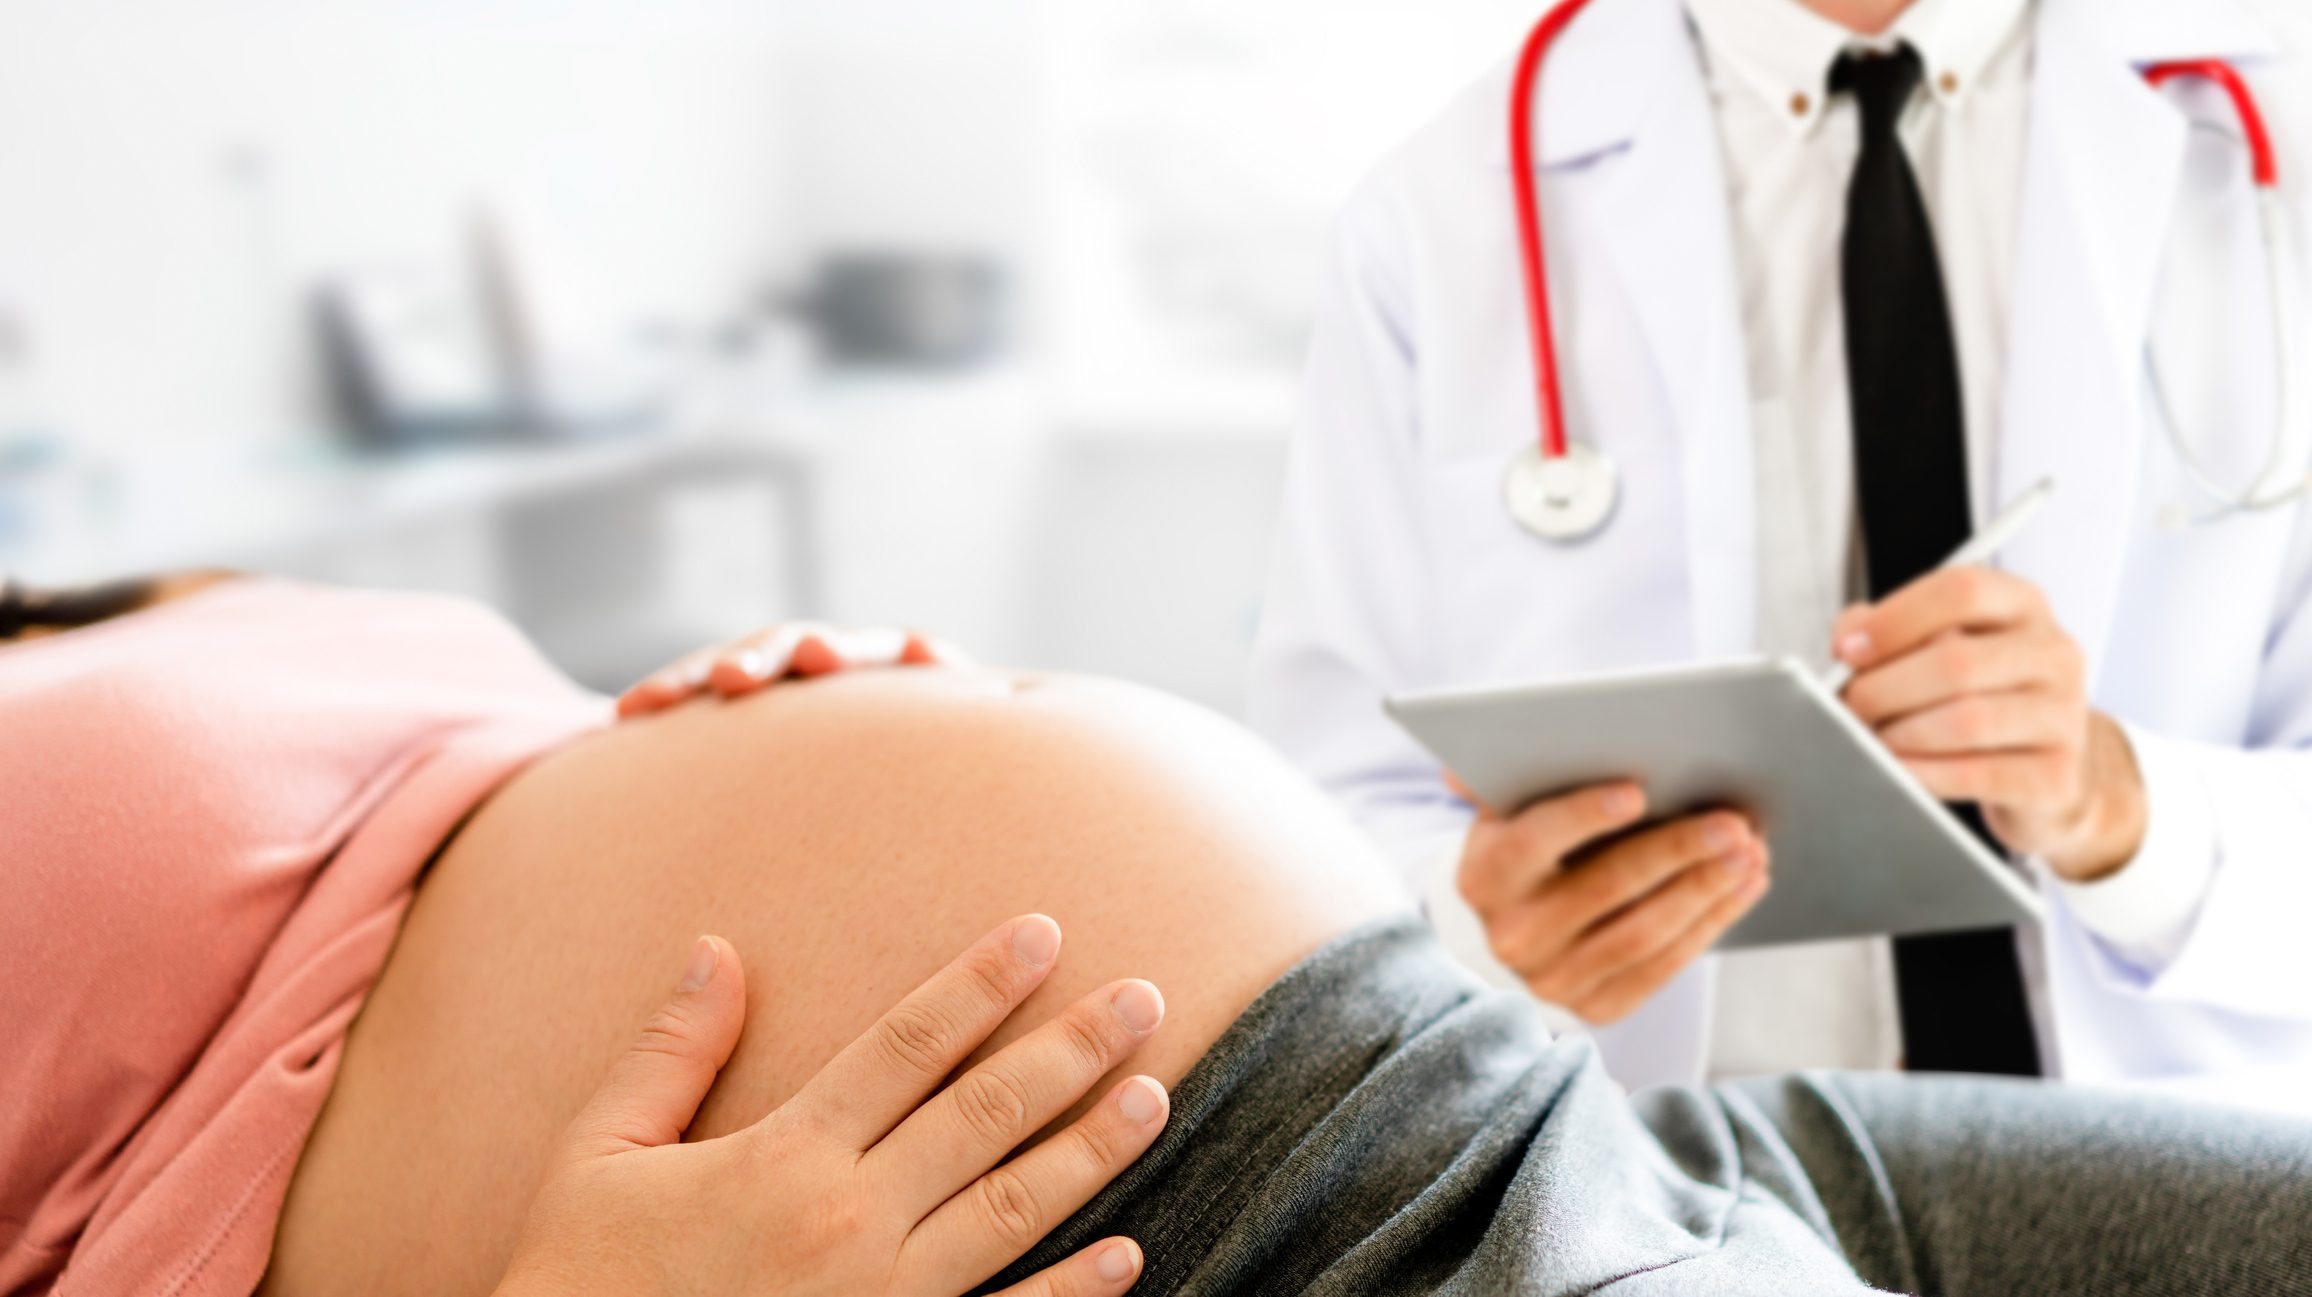 علامات المخاض أو أعراض ما قبل الولادة، تعرفي عليها بالتفصيل | عربي بوست